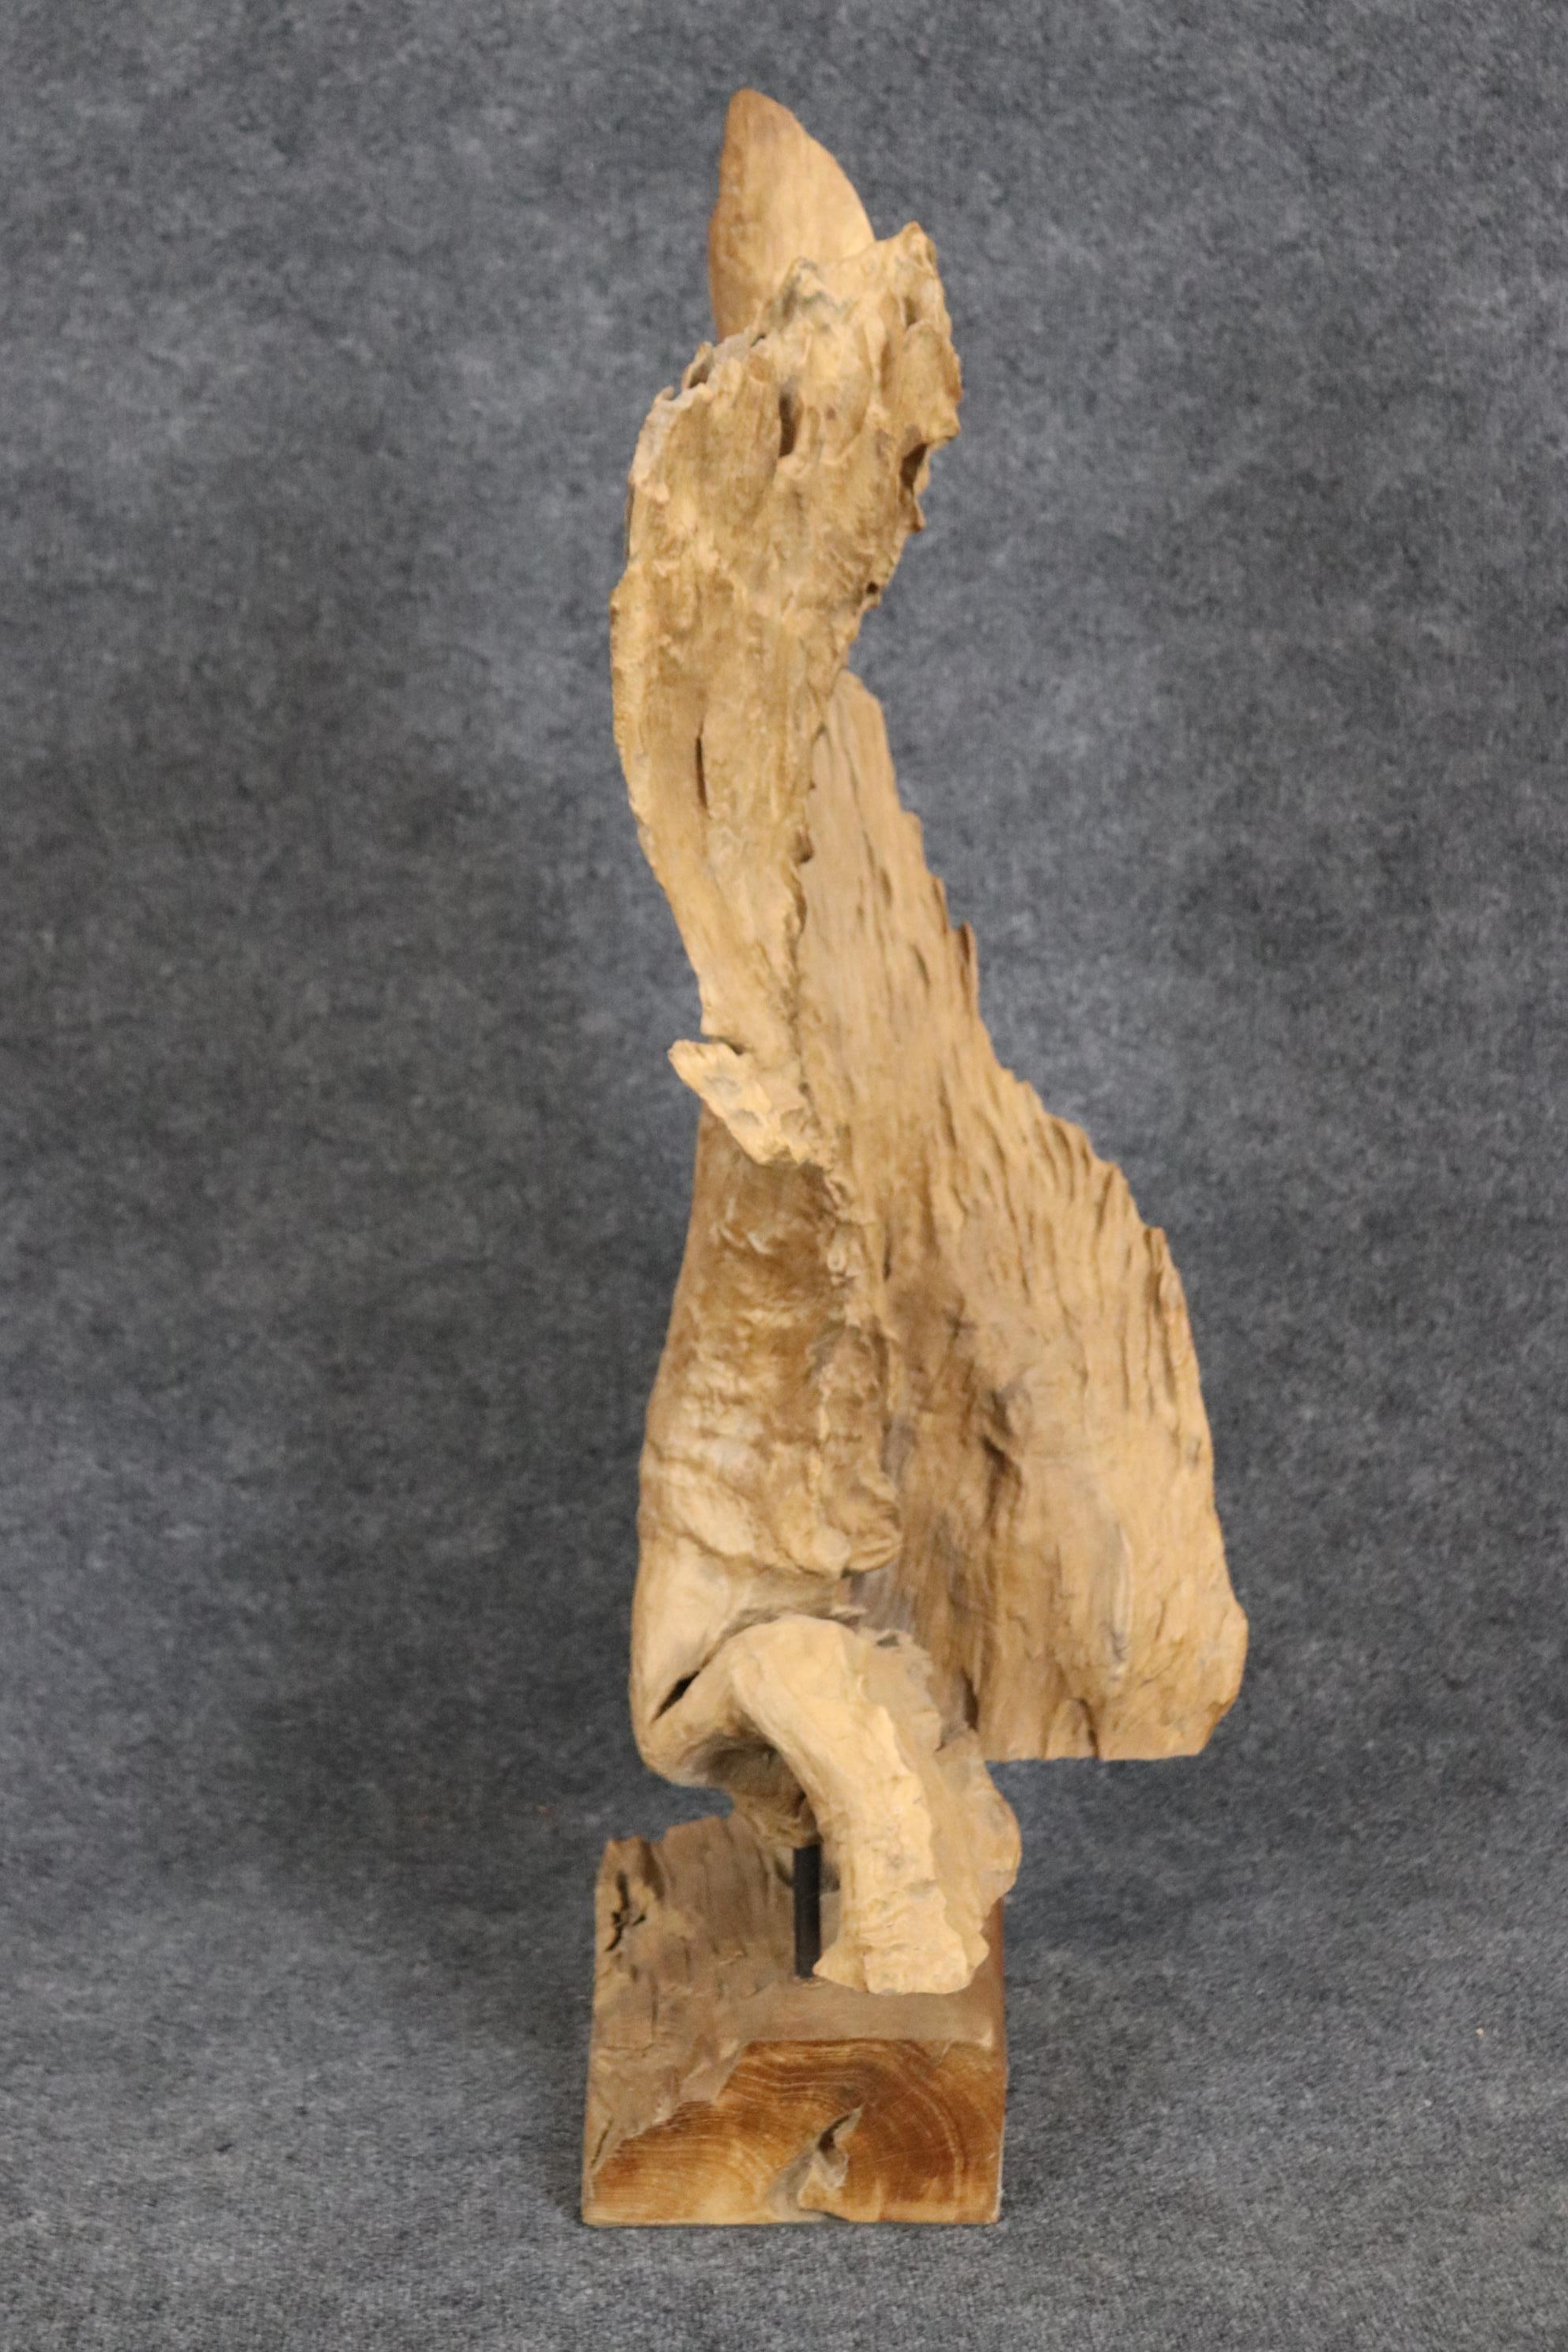 Dies ist ein wunderschönes natürliches Exemplar aus Treibholz, das professionell in eine moderne Skulptur verwandelt wurde. Dies ist ein großes und sehr dekoratives Stück aus natürlichem Treibholz, das auf einem Schreibtisch, einer Etagere oder